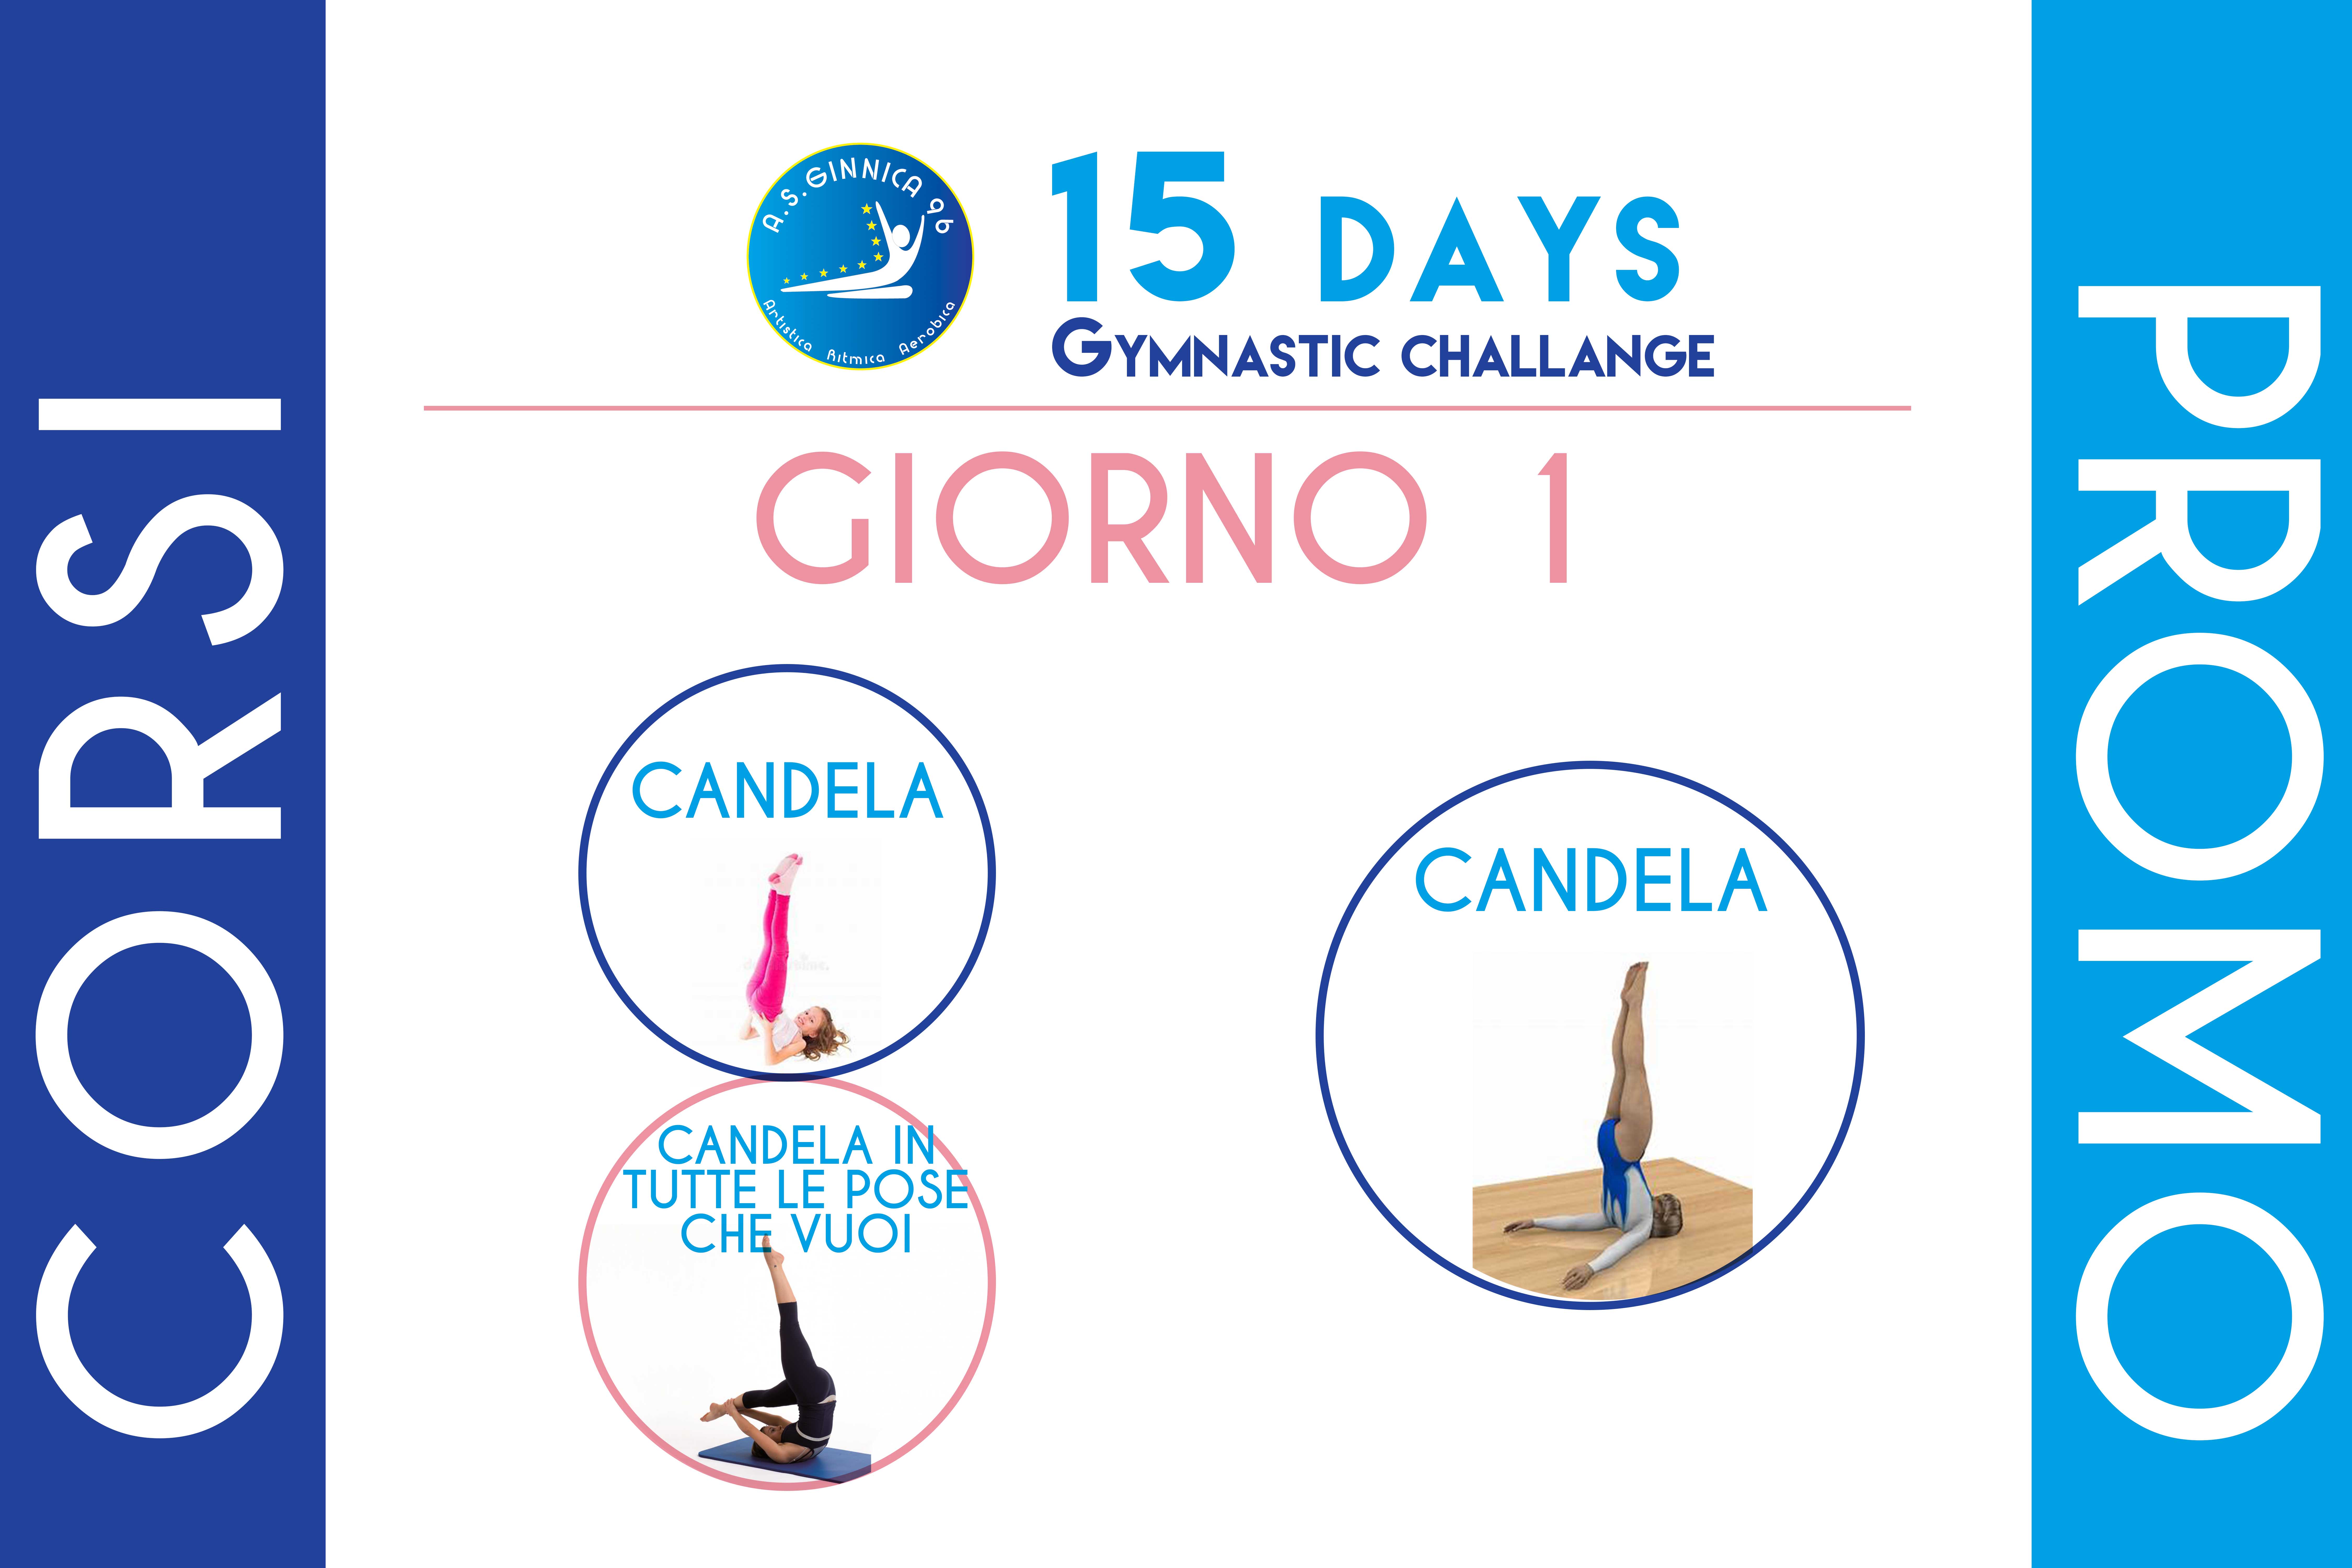 Day 1 / 15 Days Gymnastics Challenge